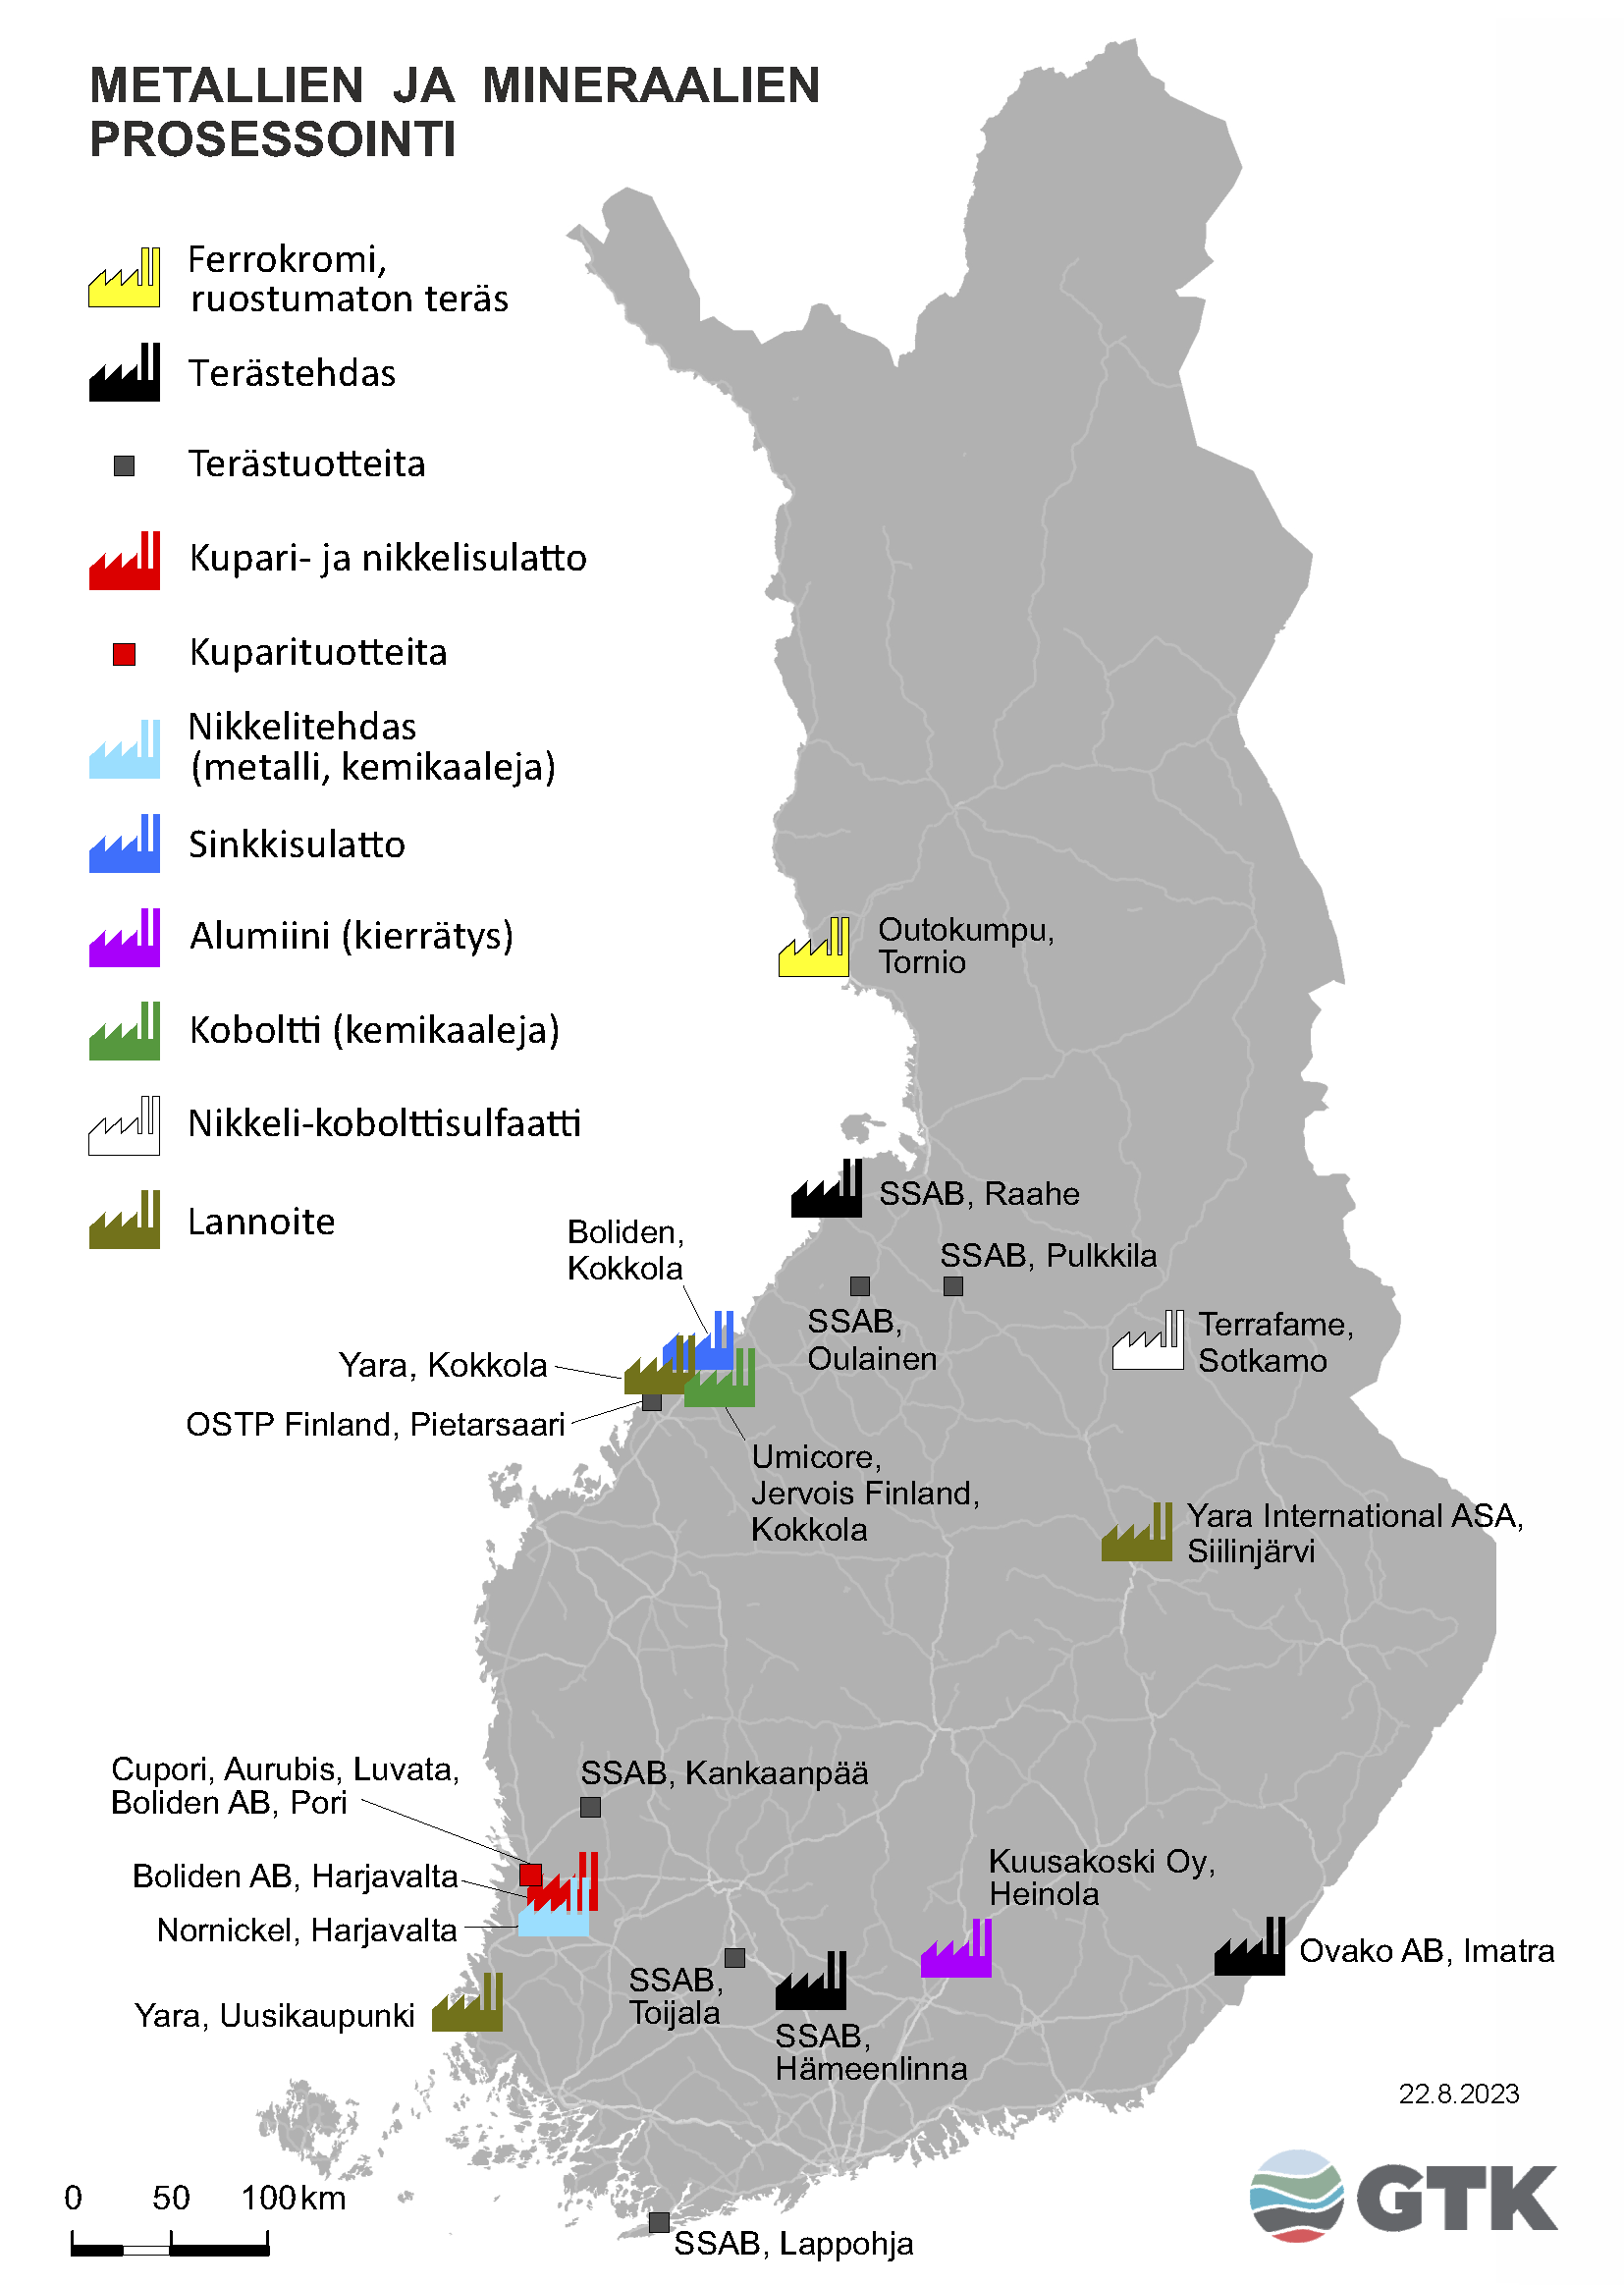 Suomen kartta, johon on merkattu metallien ja mineraalien prosessointi